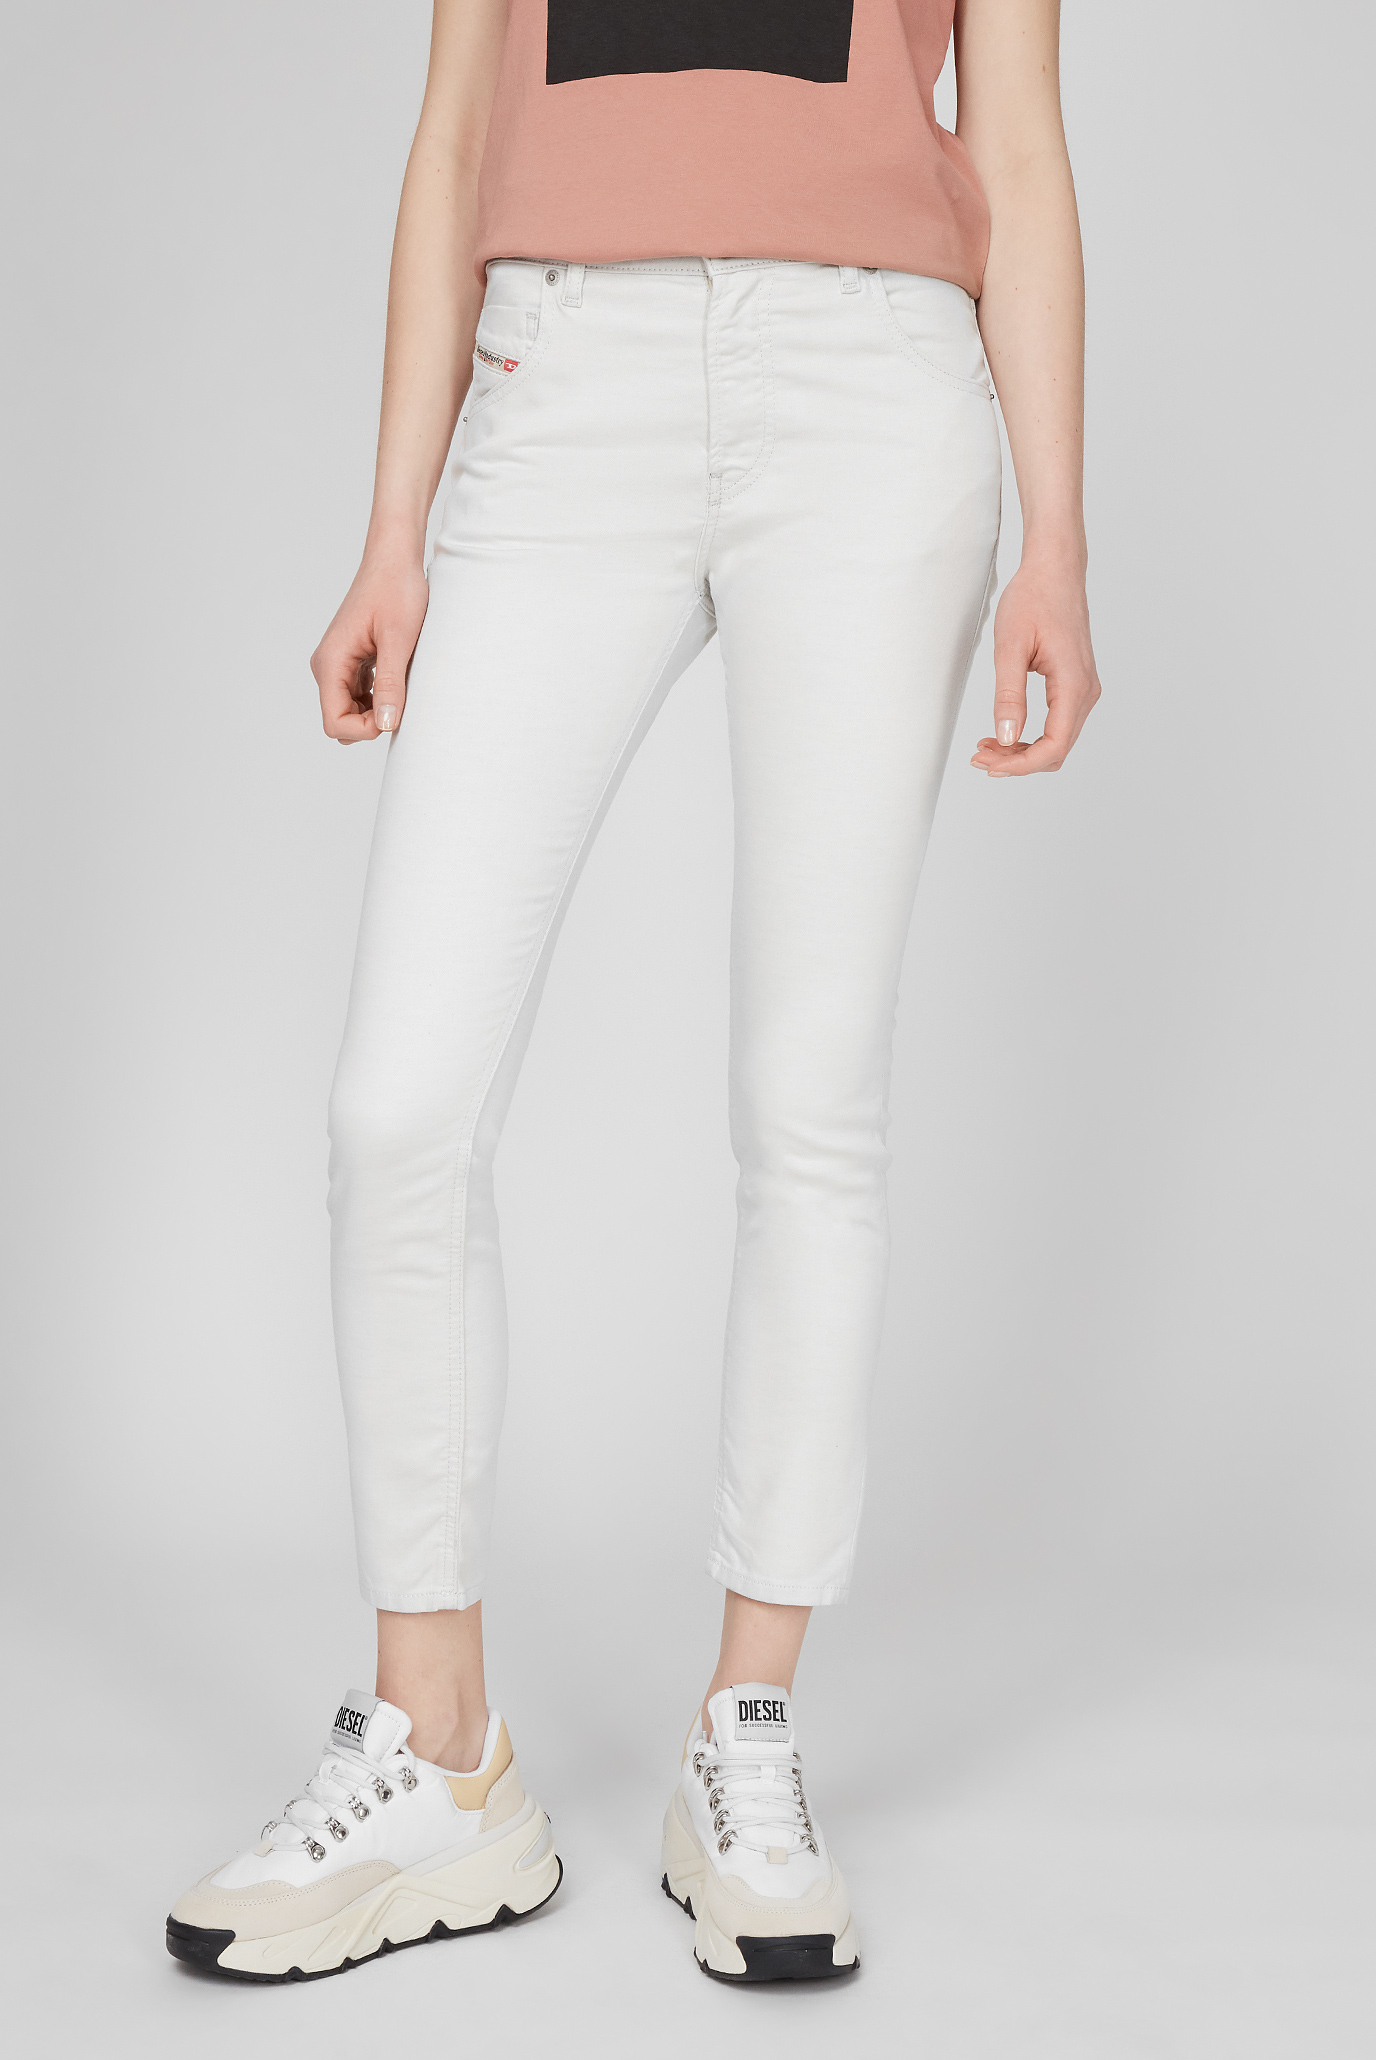 Жіночі білі джинси KRAILEY-B-NE 1